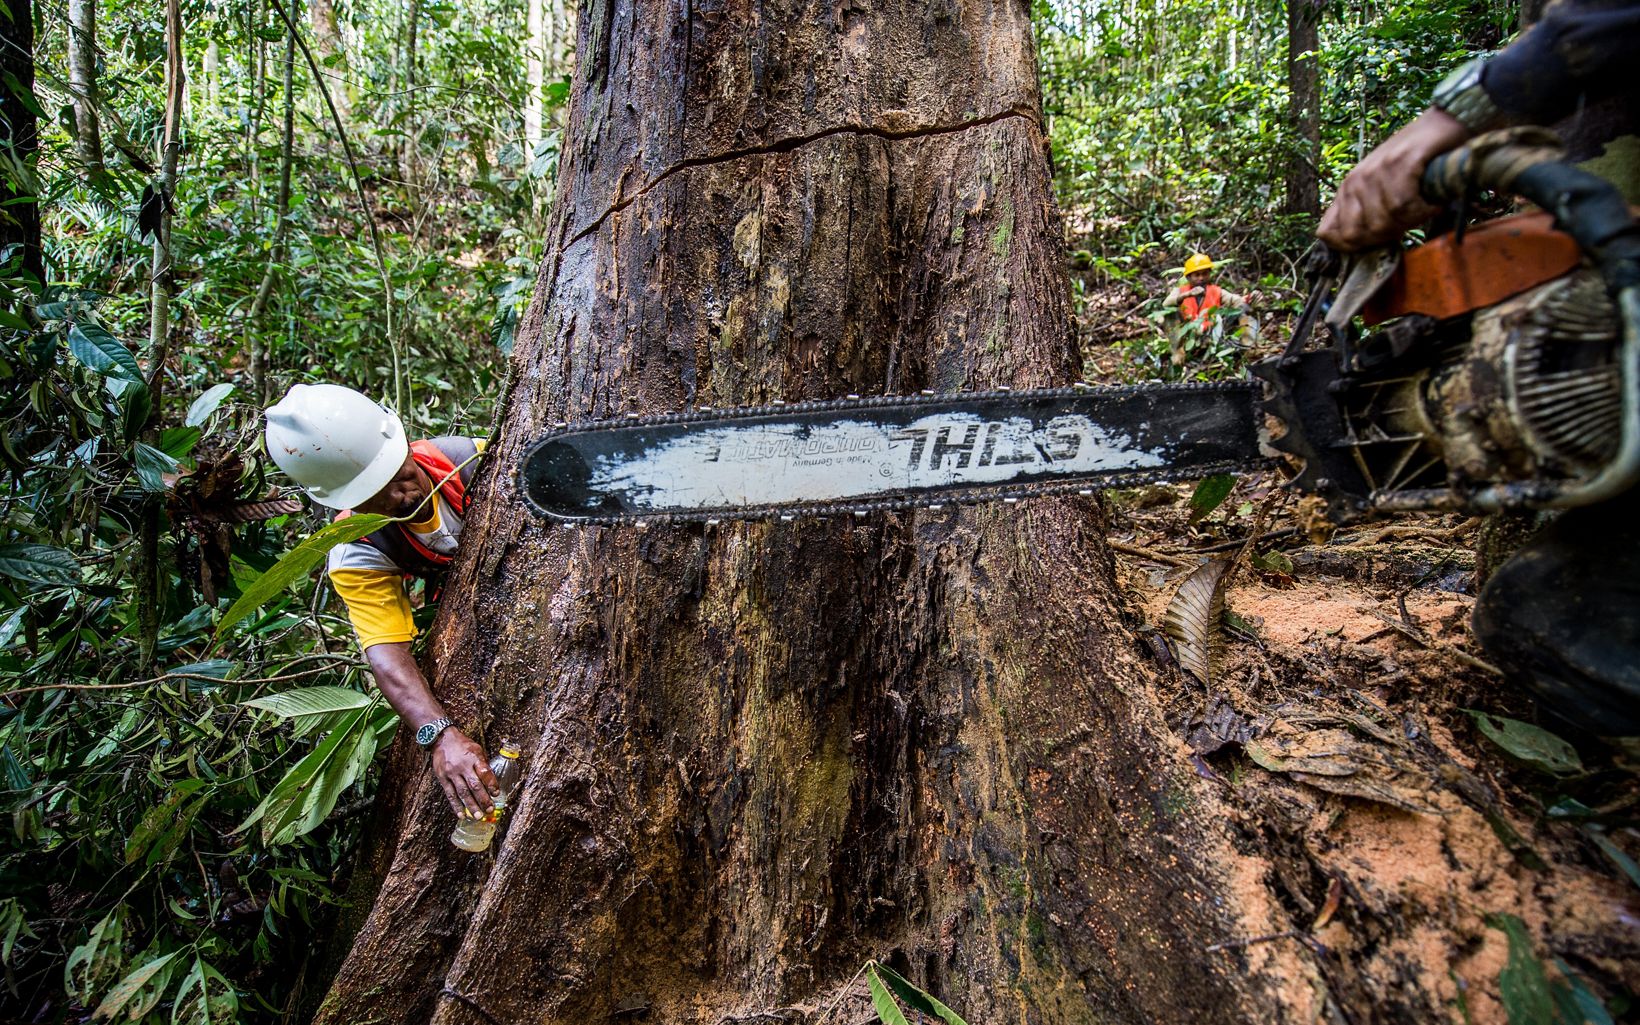 
                
                  Gergaji dan Pohon Bersiap untuk melihat pohon besar, Kalimantan Timur, Indonesia.
                  © Nick Hall
                
              